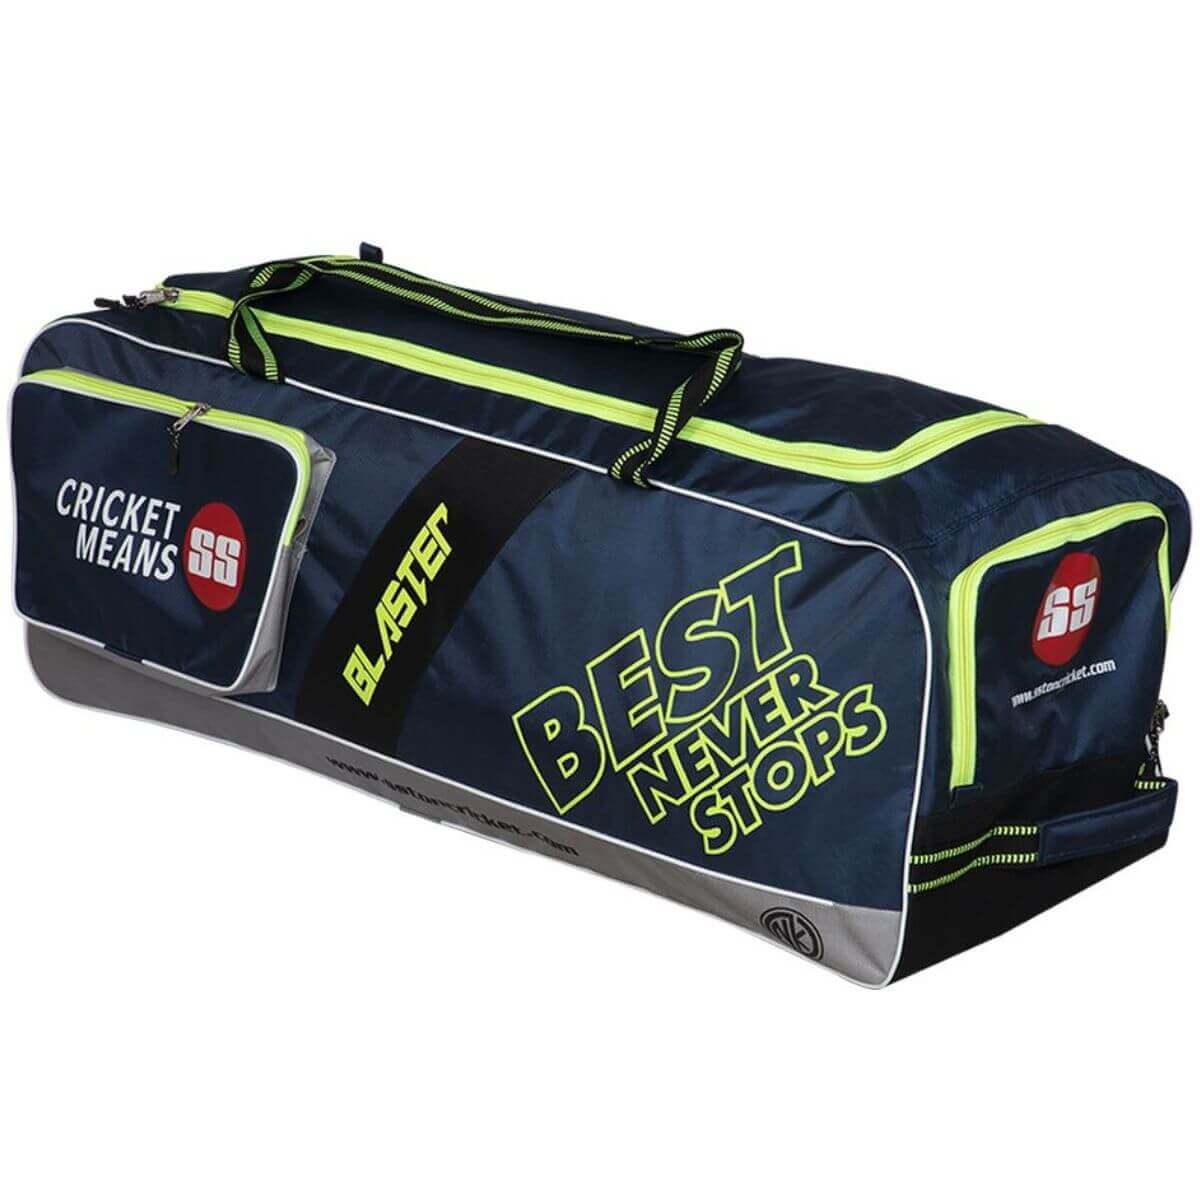 SS Sky Flicker Duffle Wheelie Cricket Kit Bag